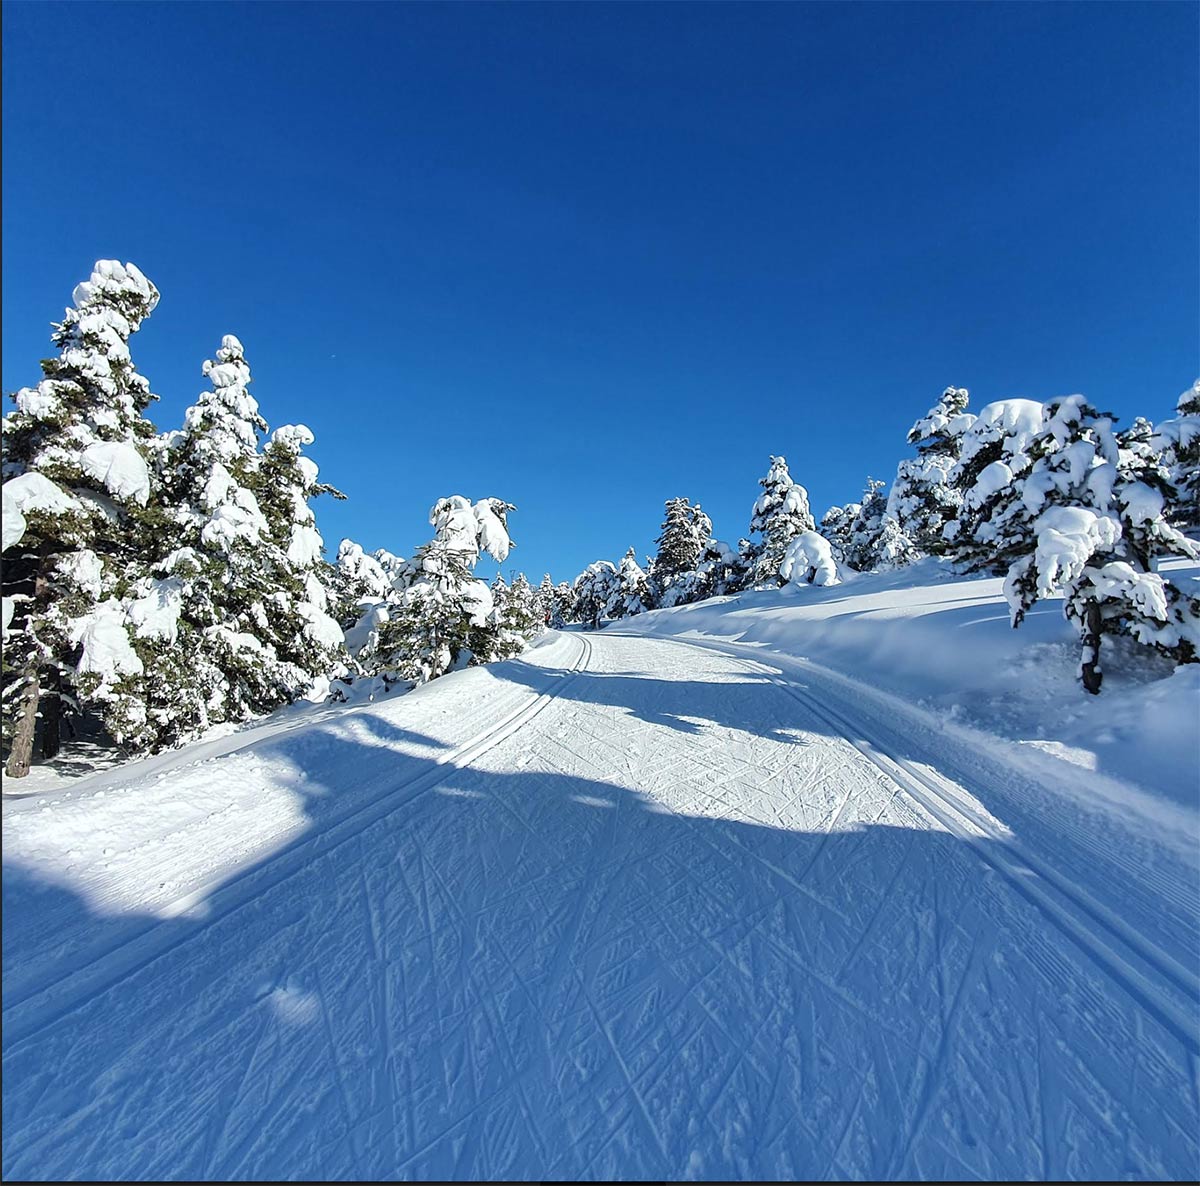 Une neige de rêve et des pistes de ski de fond au milieu des arbres. De quoi oublier les embouteillages (Photo JL)